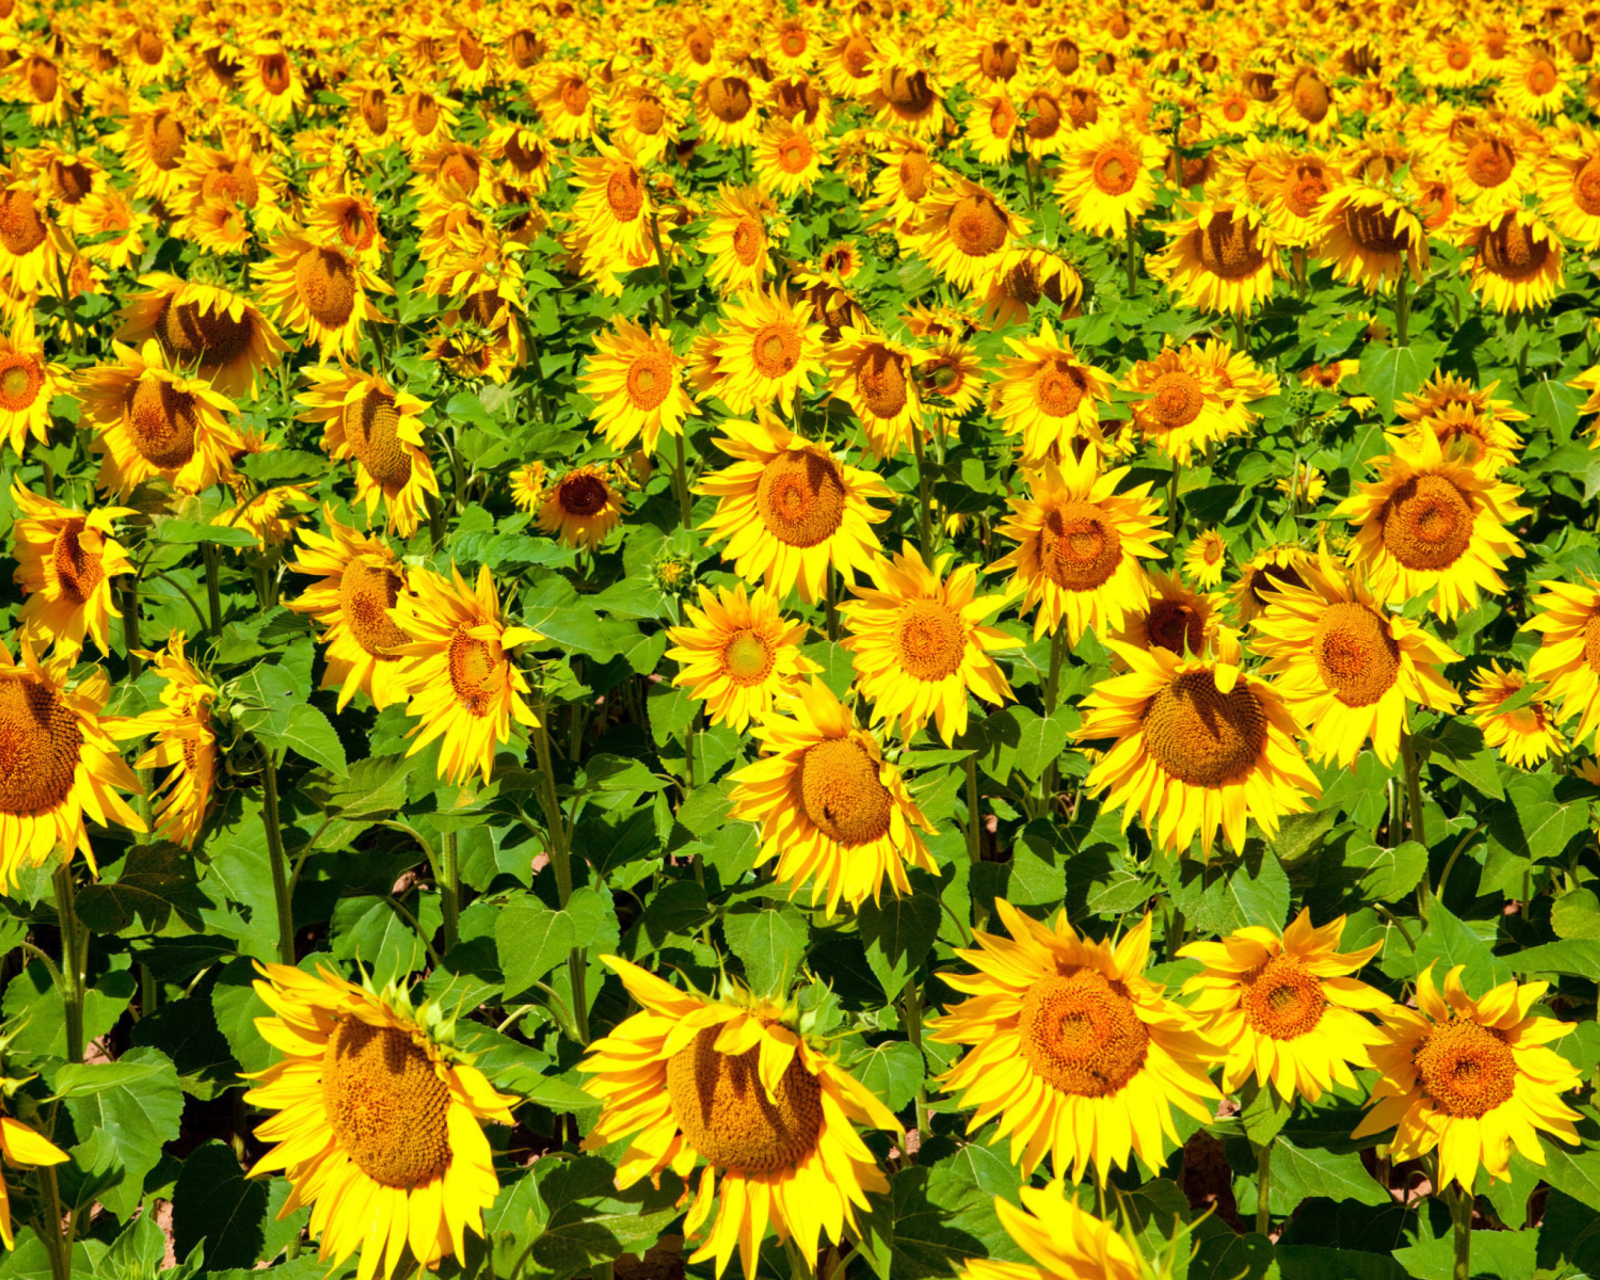 Golden Sunflower Field wallpaper 1600x1280